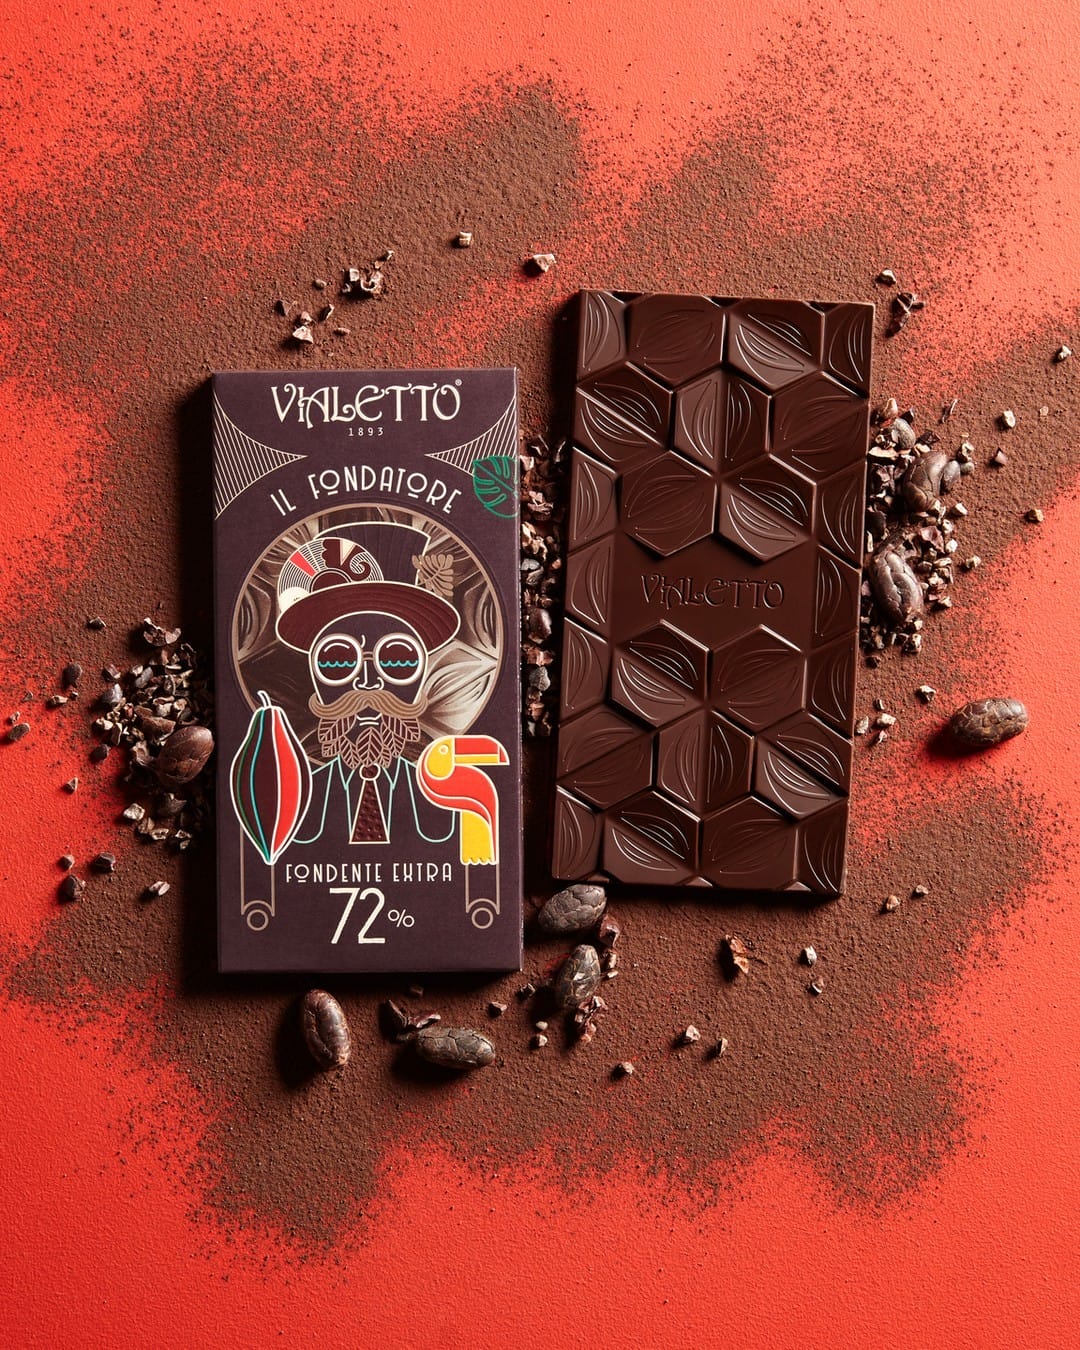 Tavoletta Il Fondatore Tavoletta Fondente cacao 72% - Vialetto